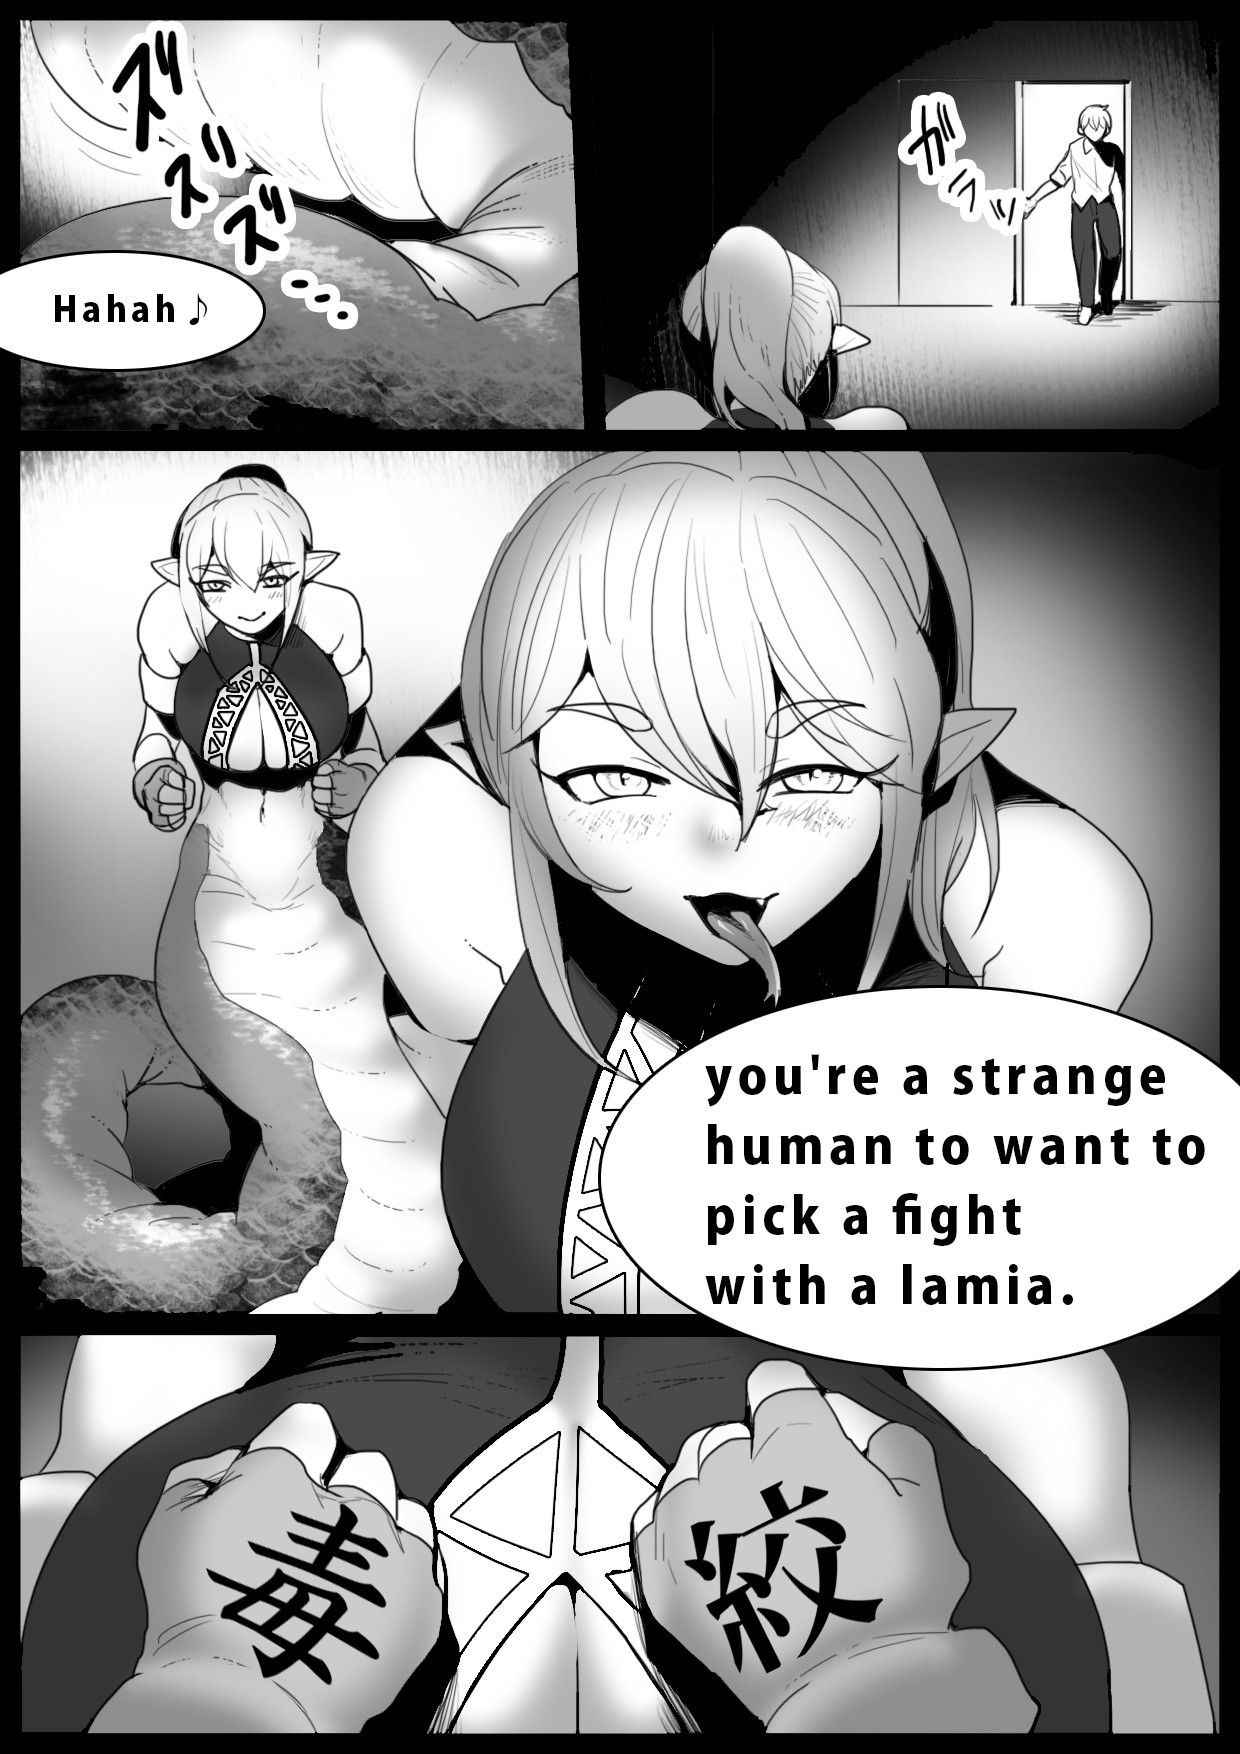 Girls Beat! -vs Lamia- - Page 2 - 9hentai - Hentai Manga, Read Hentai,  Doujin Manga